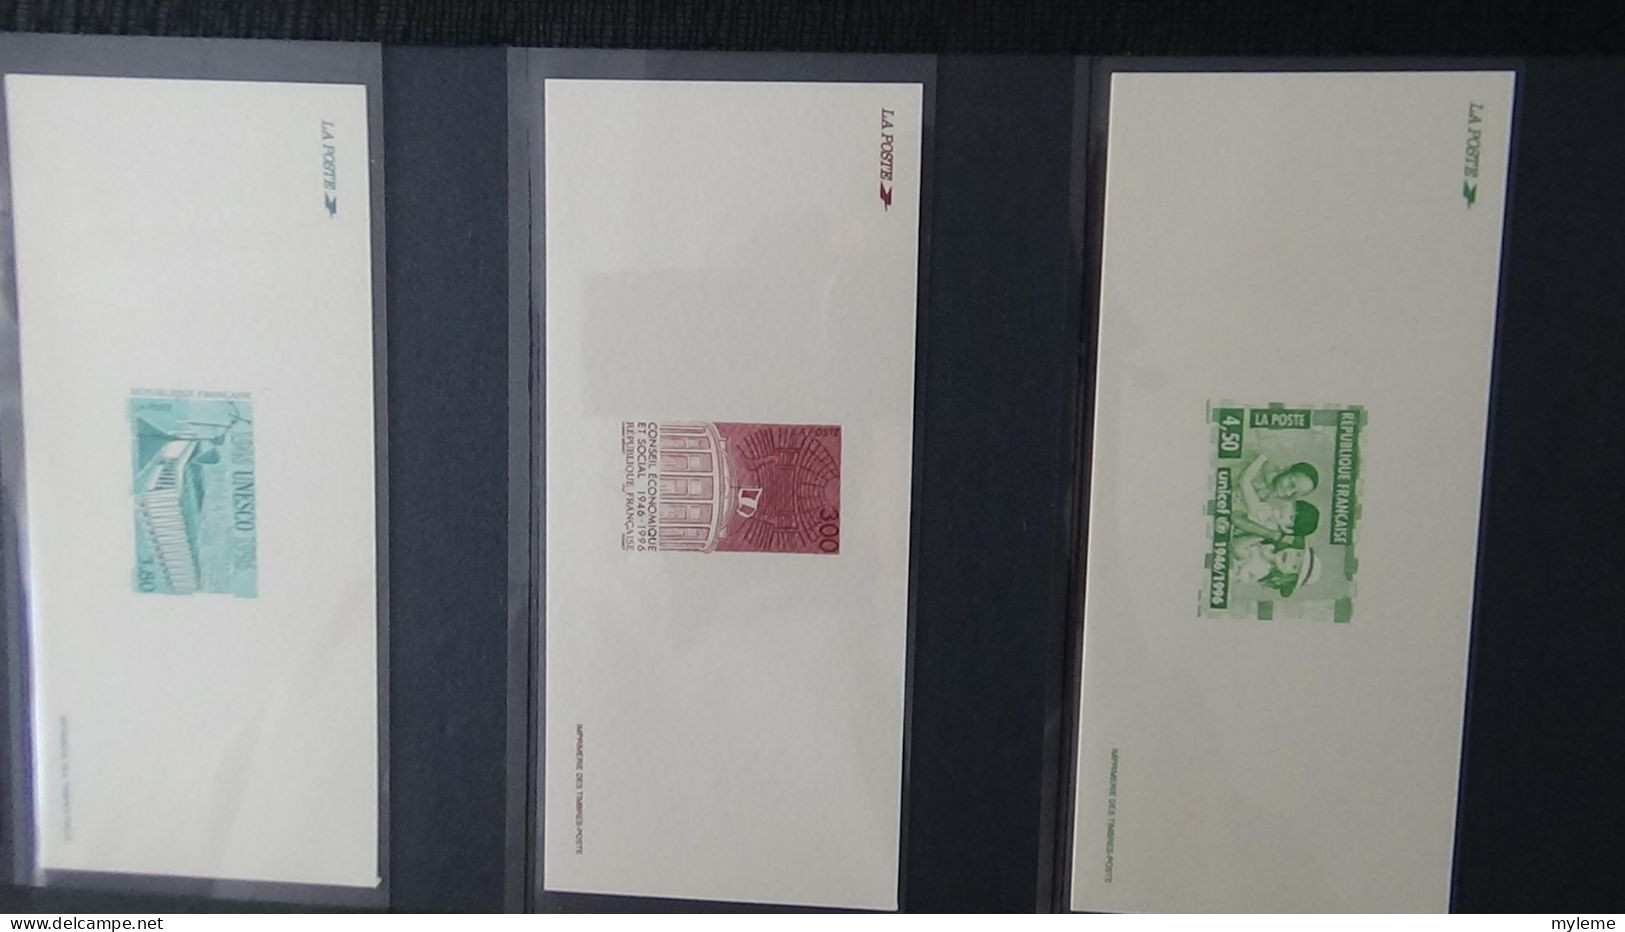 BF74 Gravures des timbres-poste de France sans son album d'origine   A saisir !!!